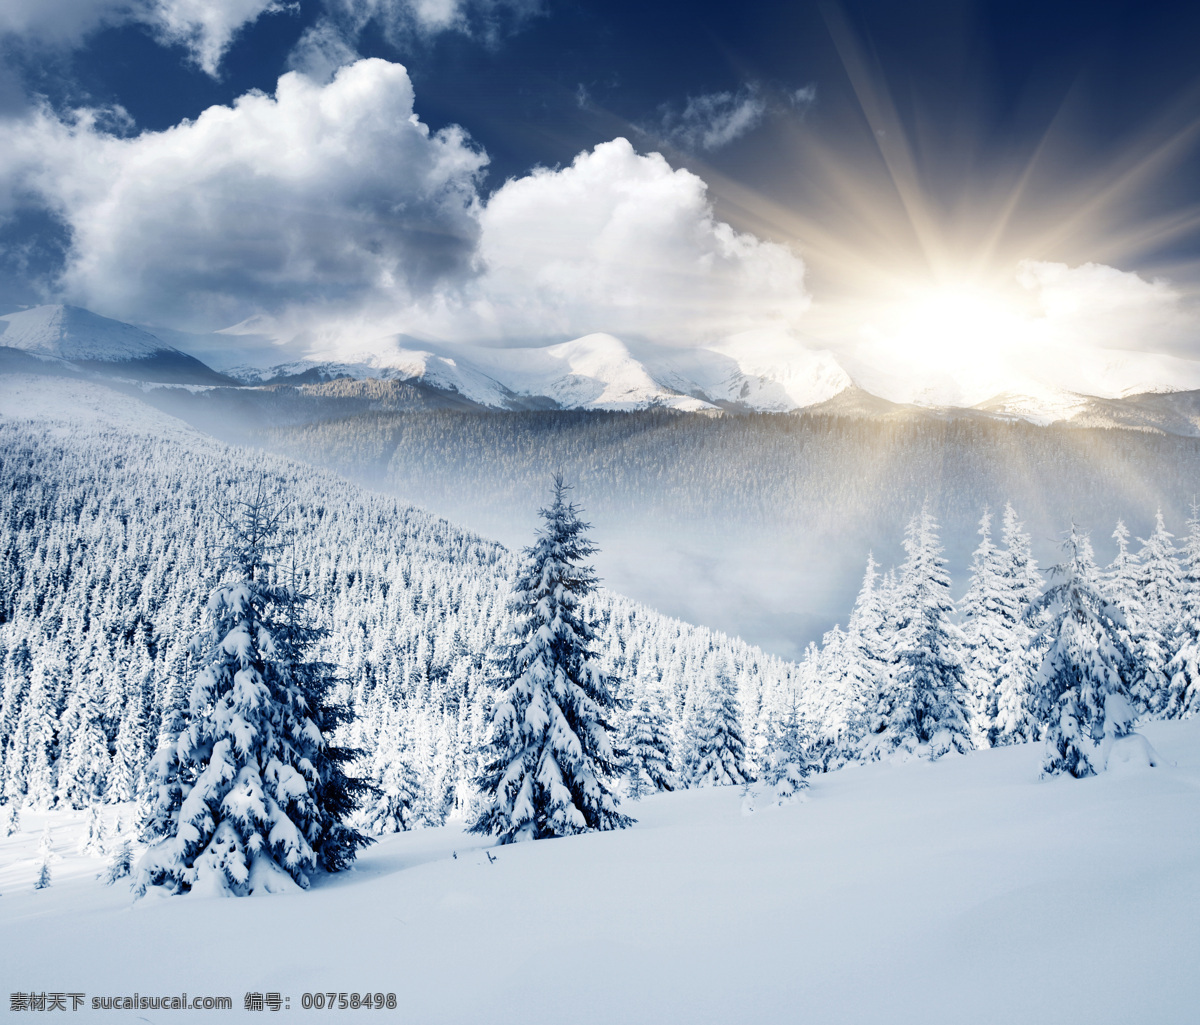 冬天积雪美景 冬季 冬天 雪景 美丽风景 景色 美景 积雪 雪地 森林 树木 冬季景观 自然风景 自然景观 白色